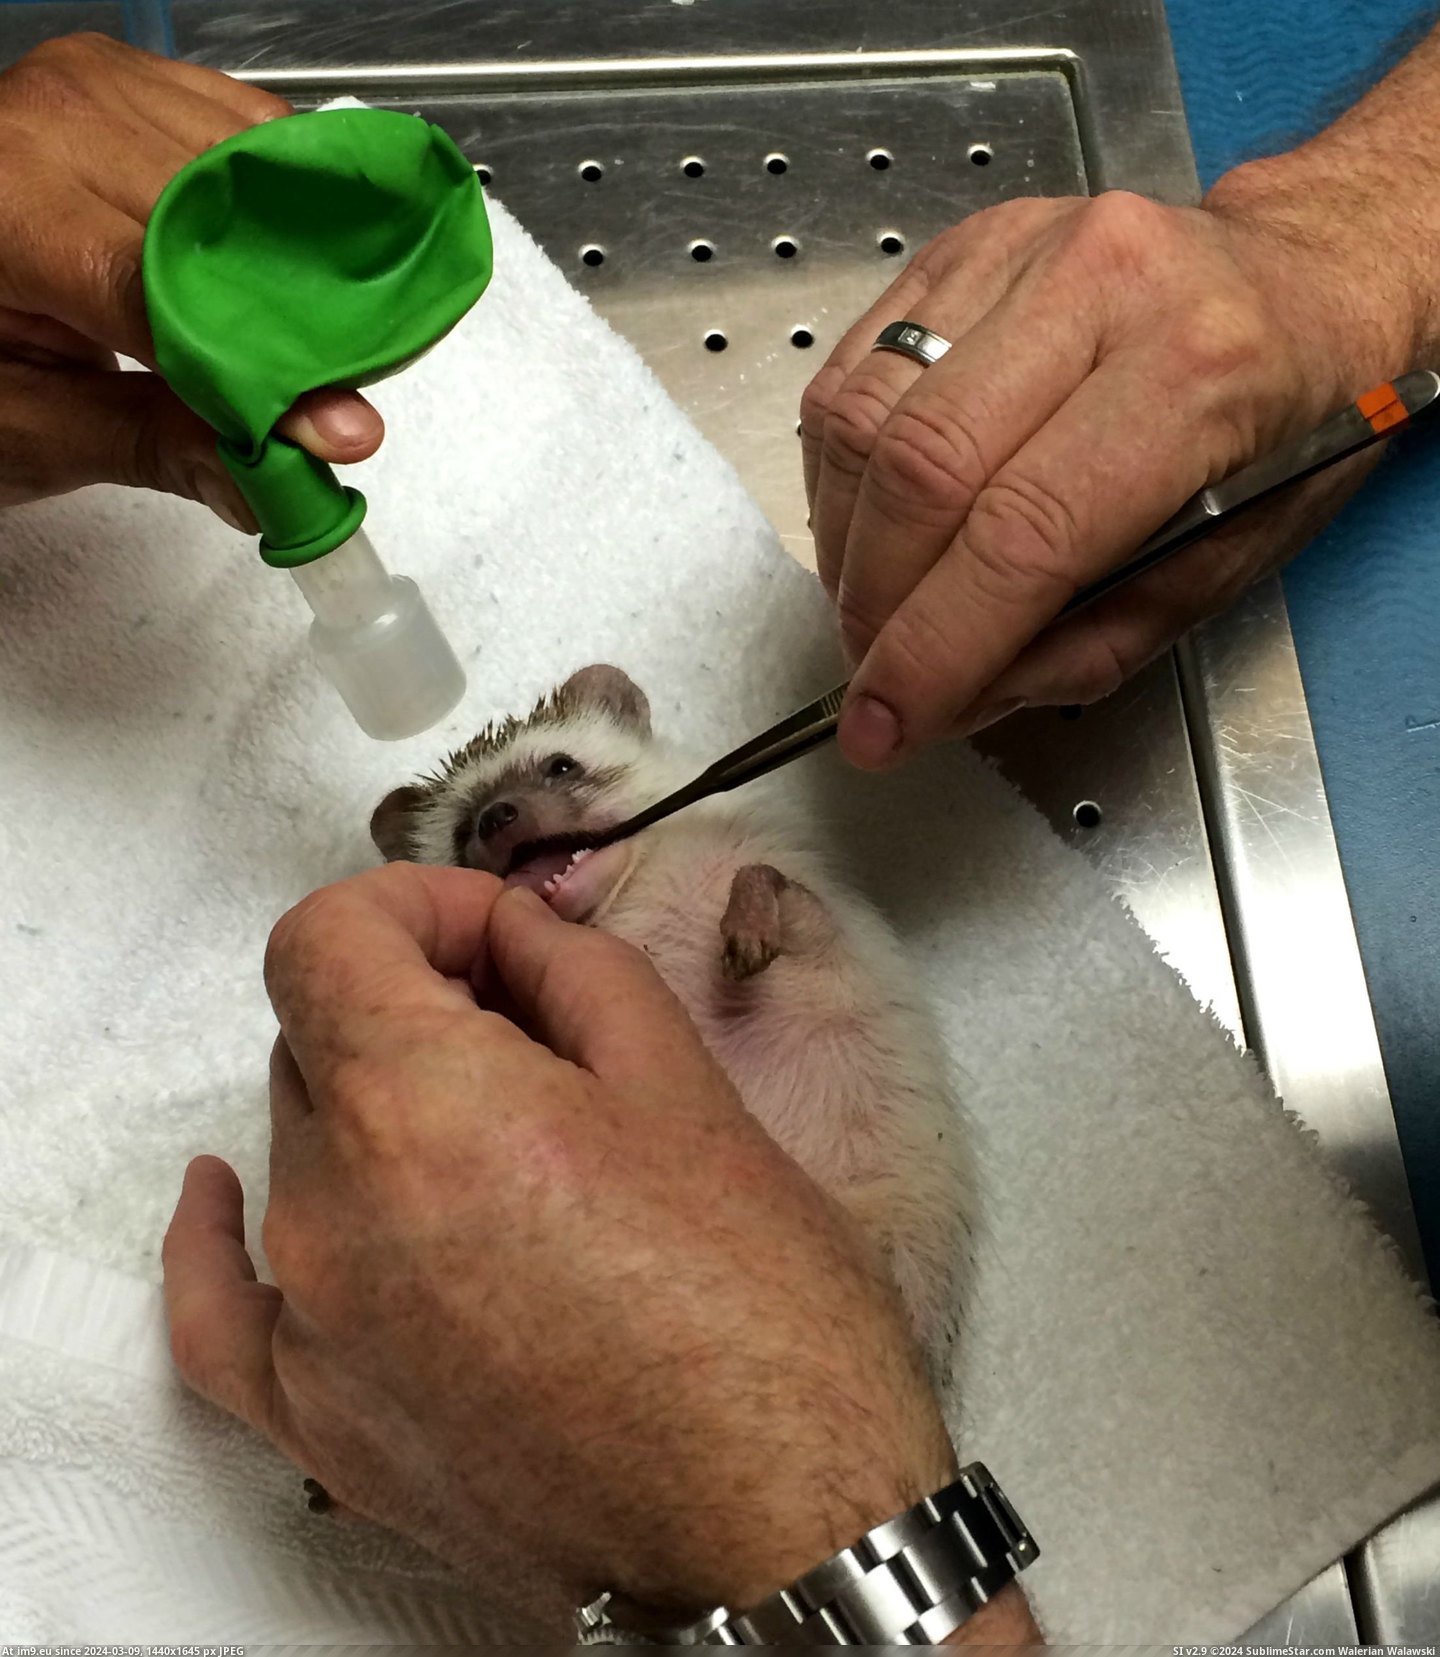 #Album #Oral #Anesthesia #Hedgehog #Exam [Aww] My hedgehog just had anesthesia for an oral exam [album] 3 Pic. (Bild von album My r/AWW favs))